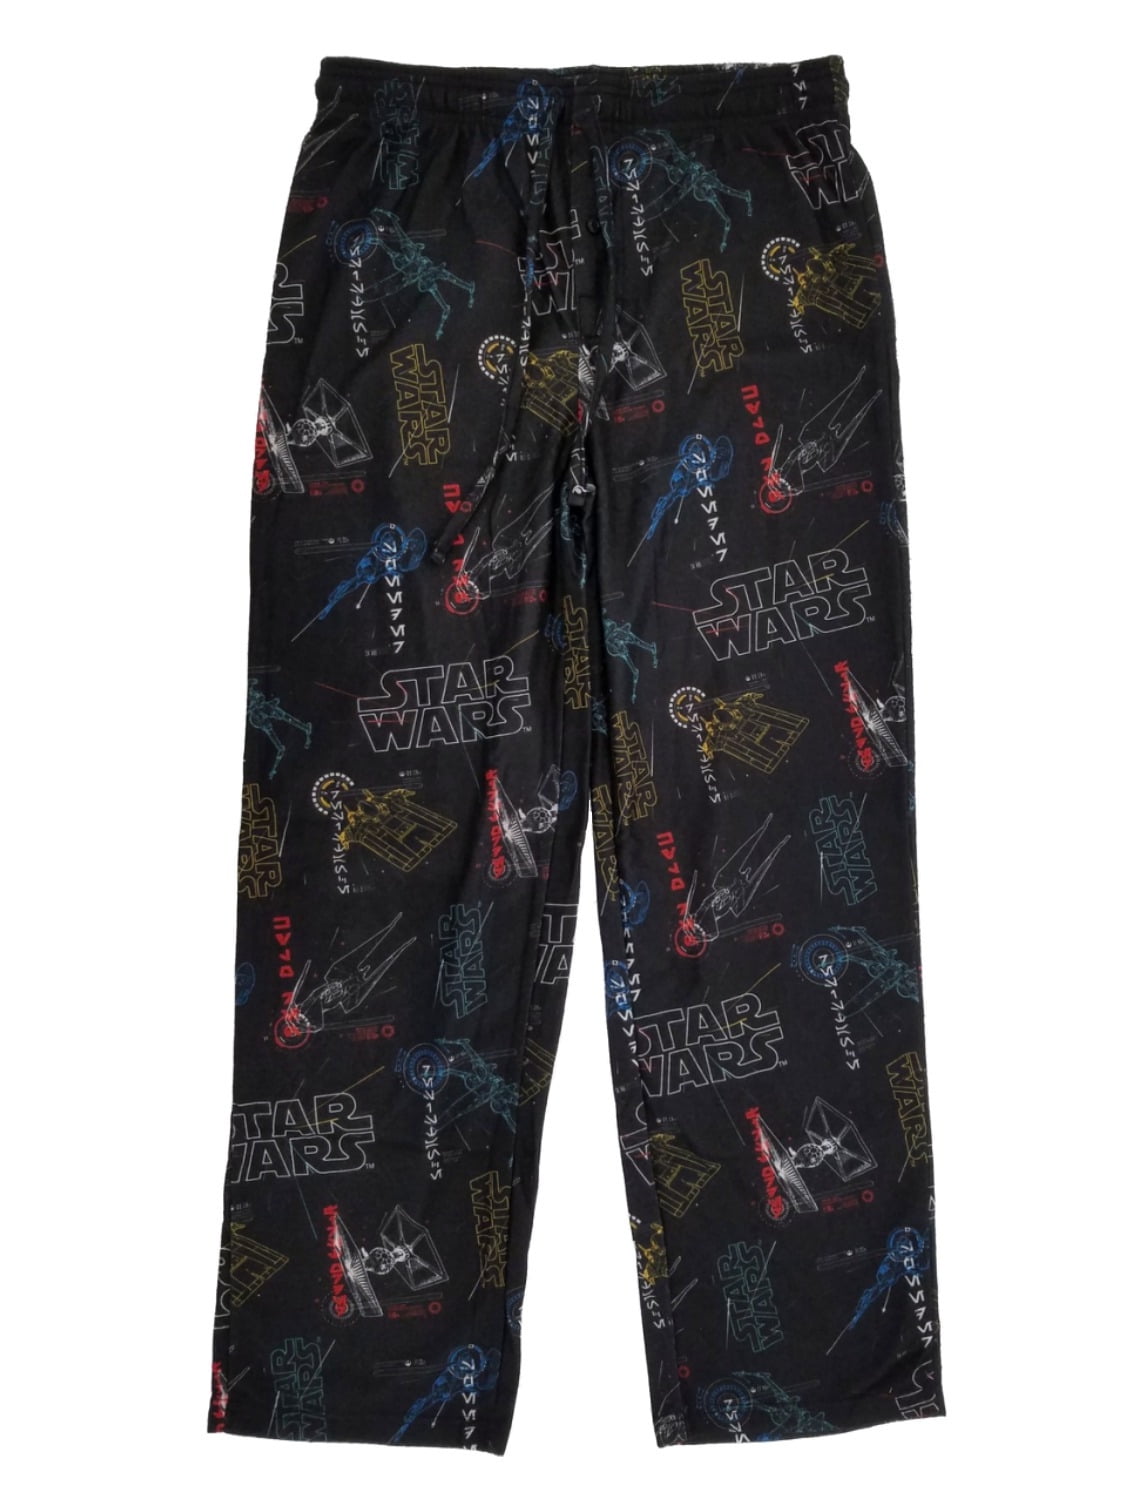 Star Wars - Star Wars Tie Fighter X-Wing Mens Black Flannel Sleep Pants